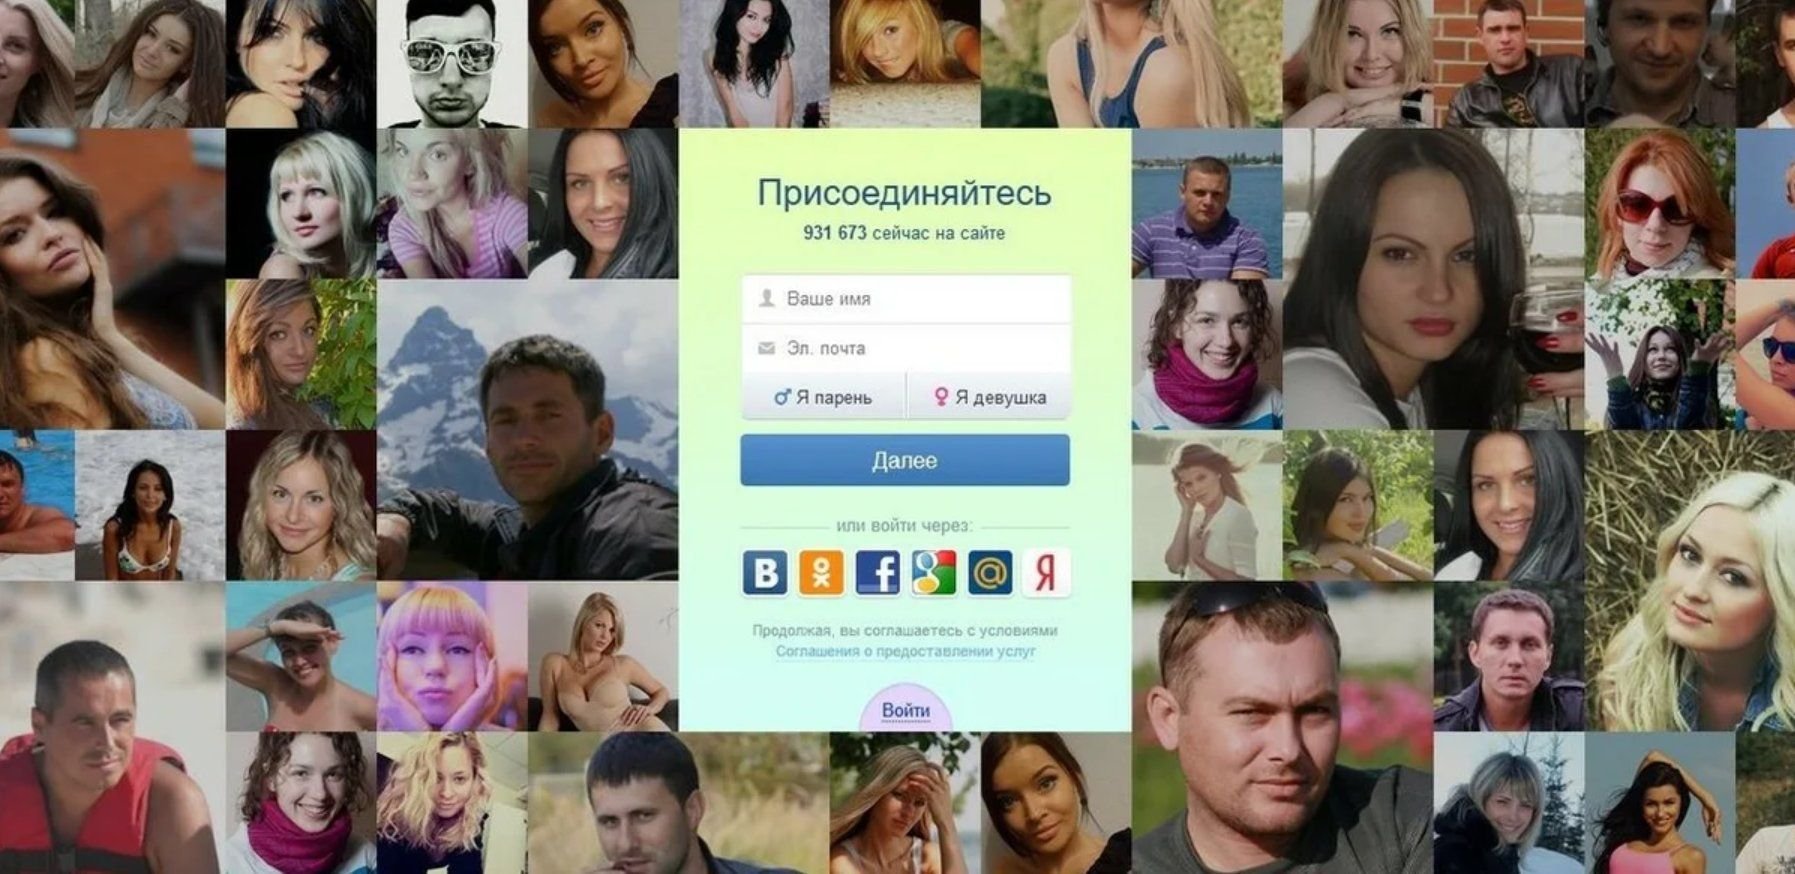 24open ru приличный сайт знакомств. Какие есть сайты знакомств, показать. Где можно познакомиться с людьми в интернете. Найти сайт знакомств.. Популярные сайты фотографий.